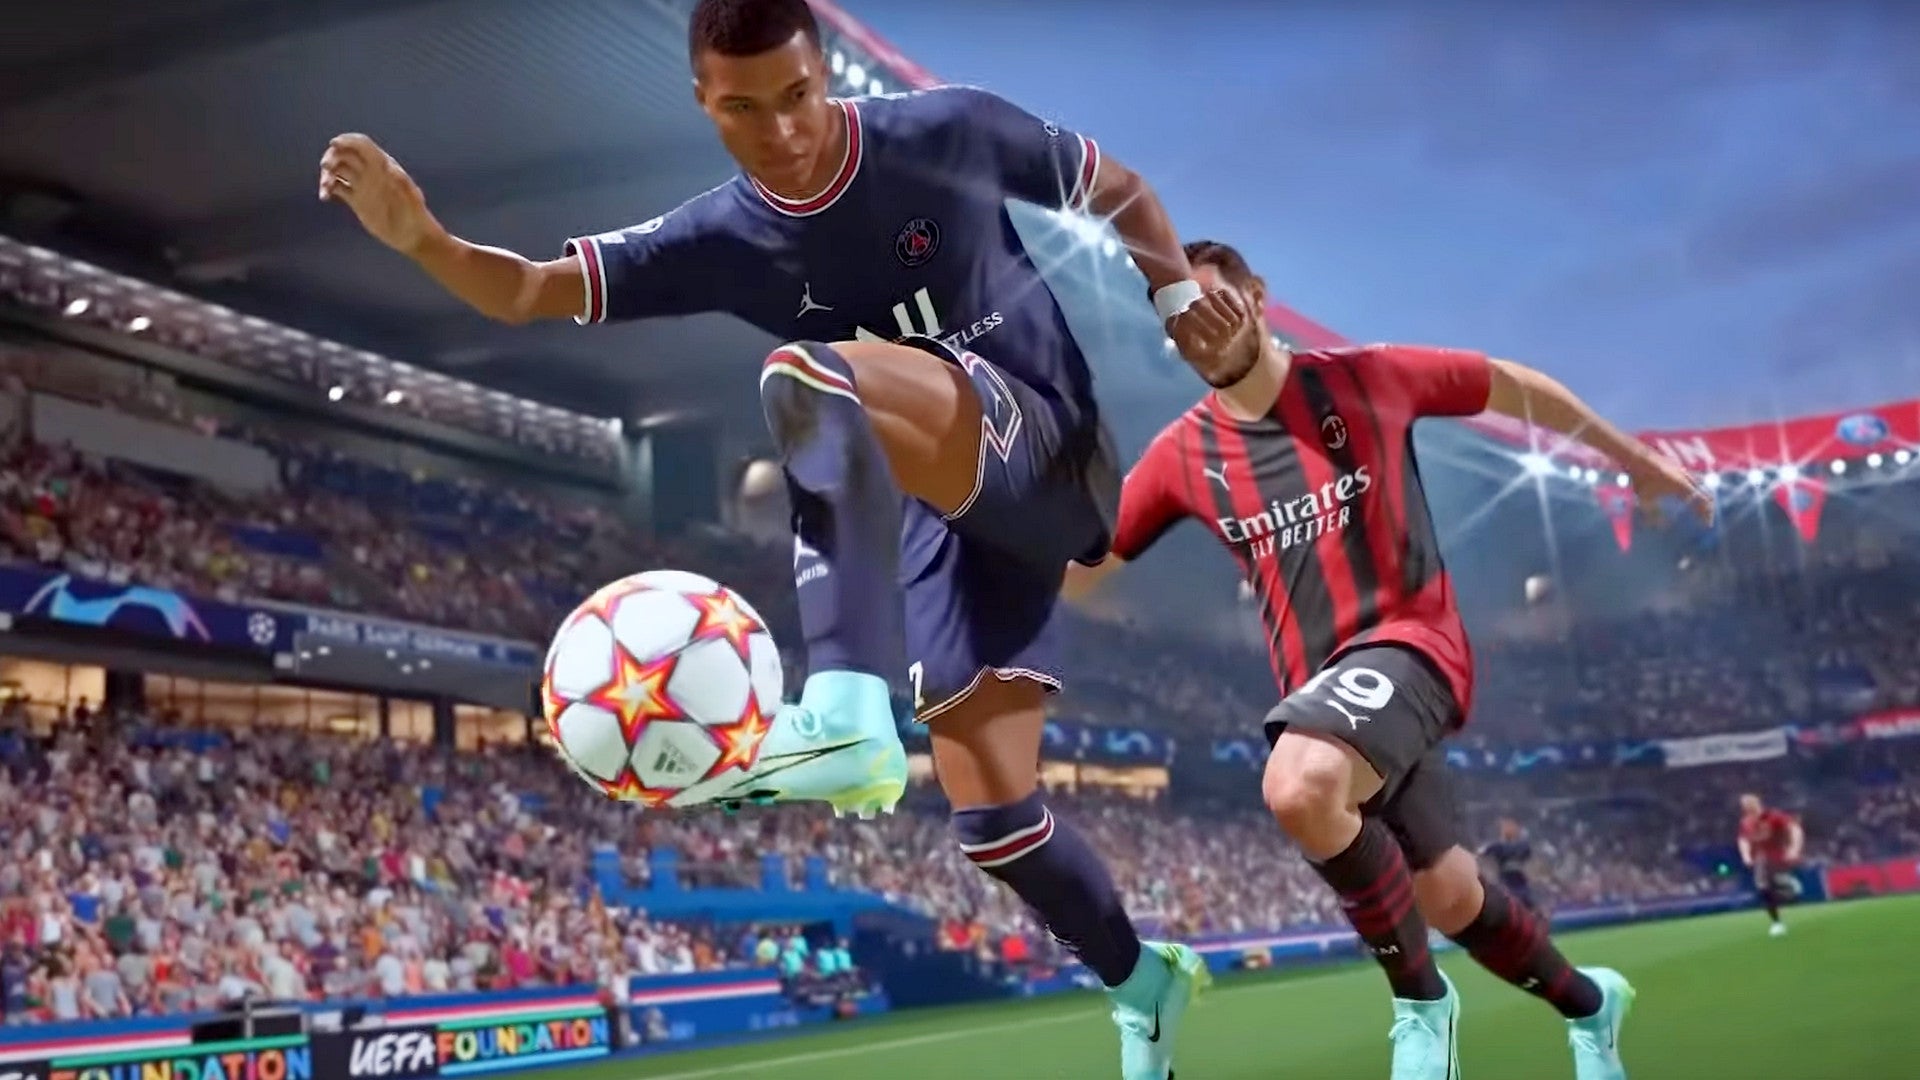 Bilder zu FIFA 22 testet bald Crossplay, aber mit Einschränkungen